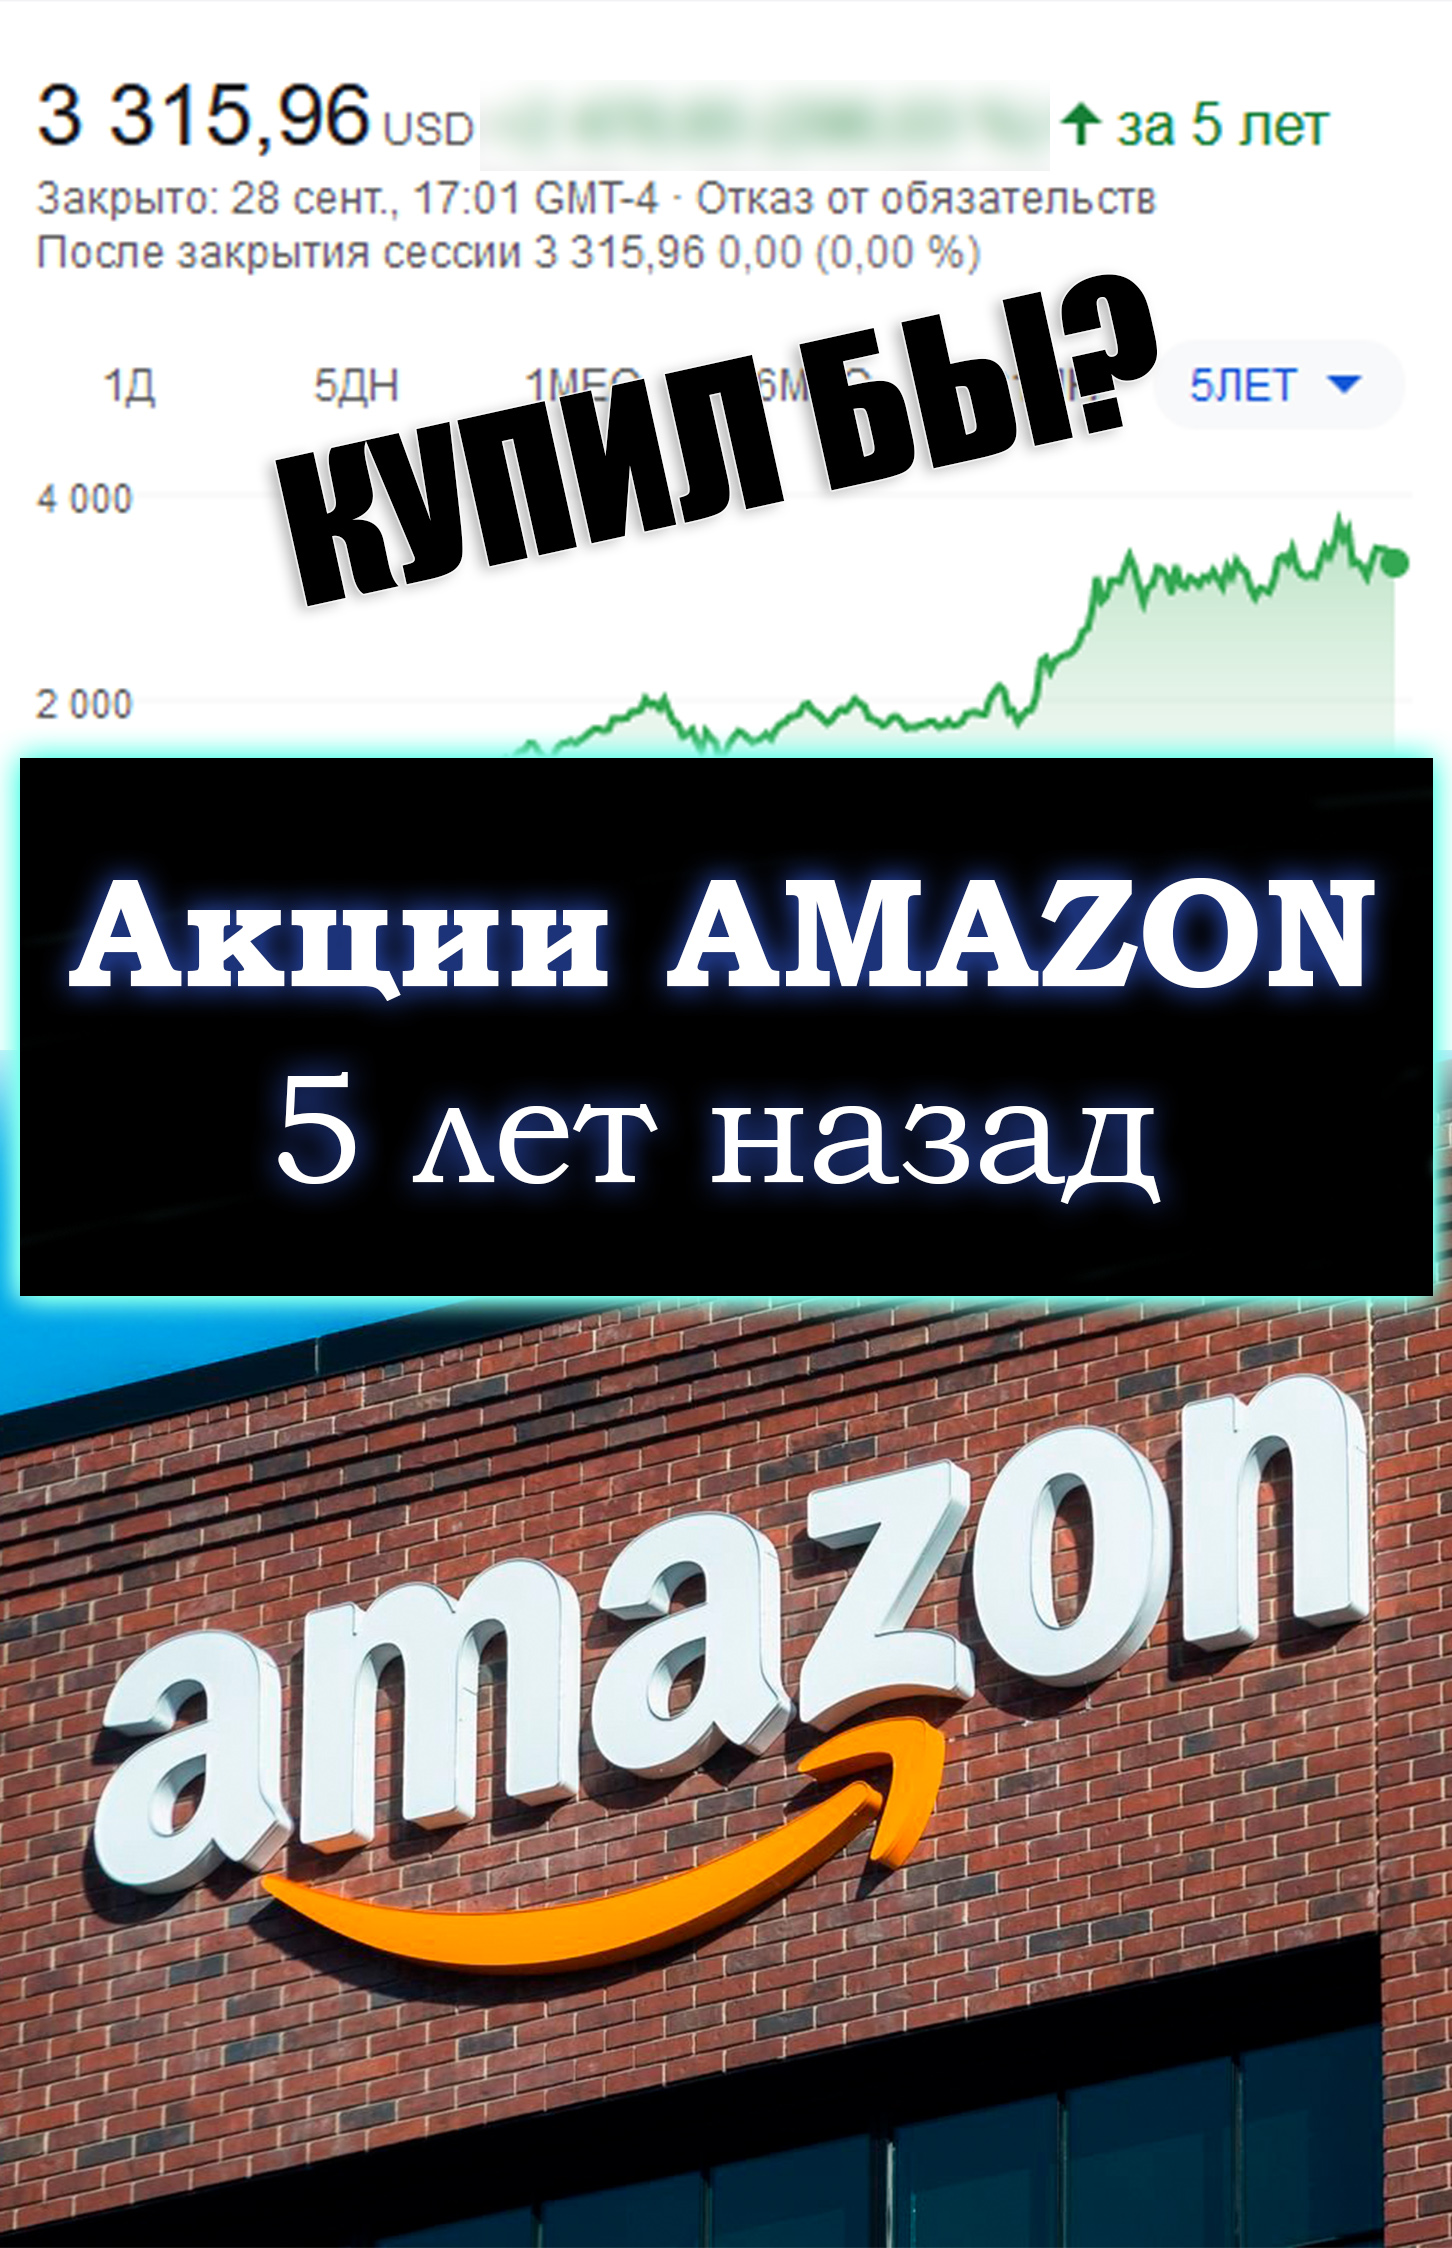 Сколько можно было заработать, купив акции Amazon 5 лет назад?